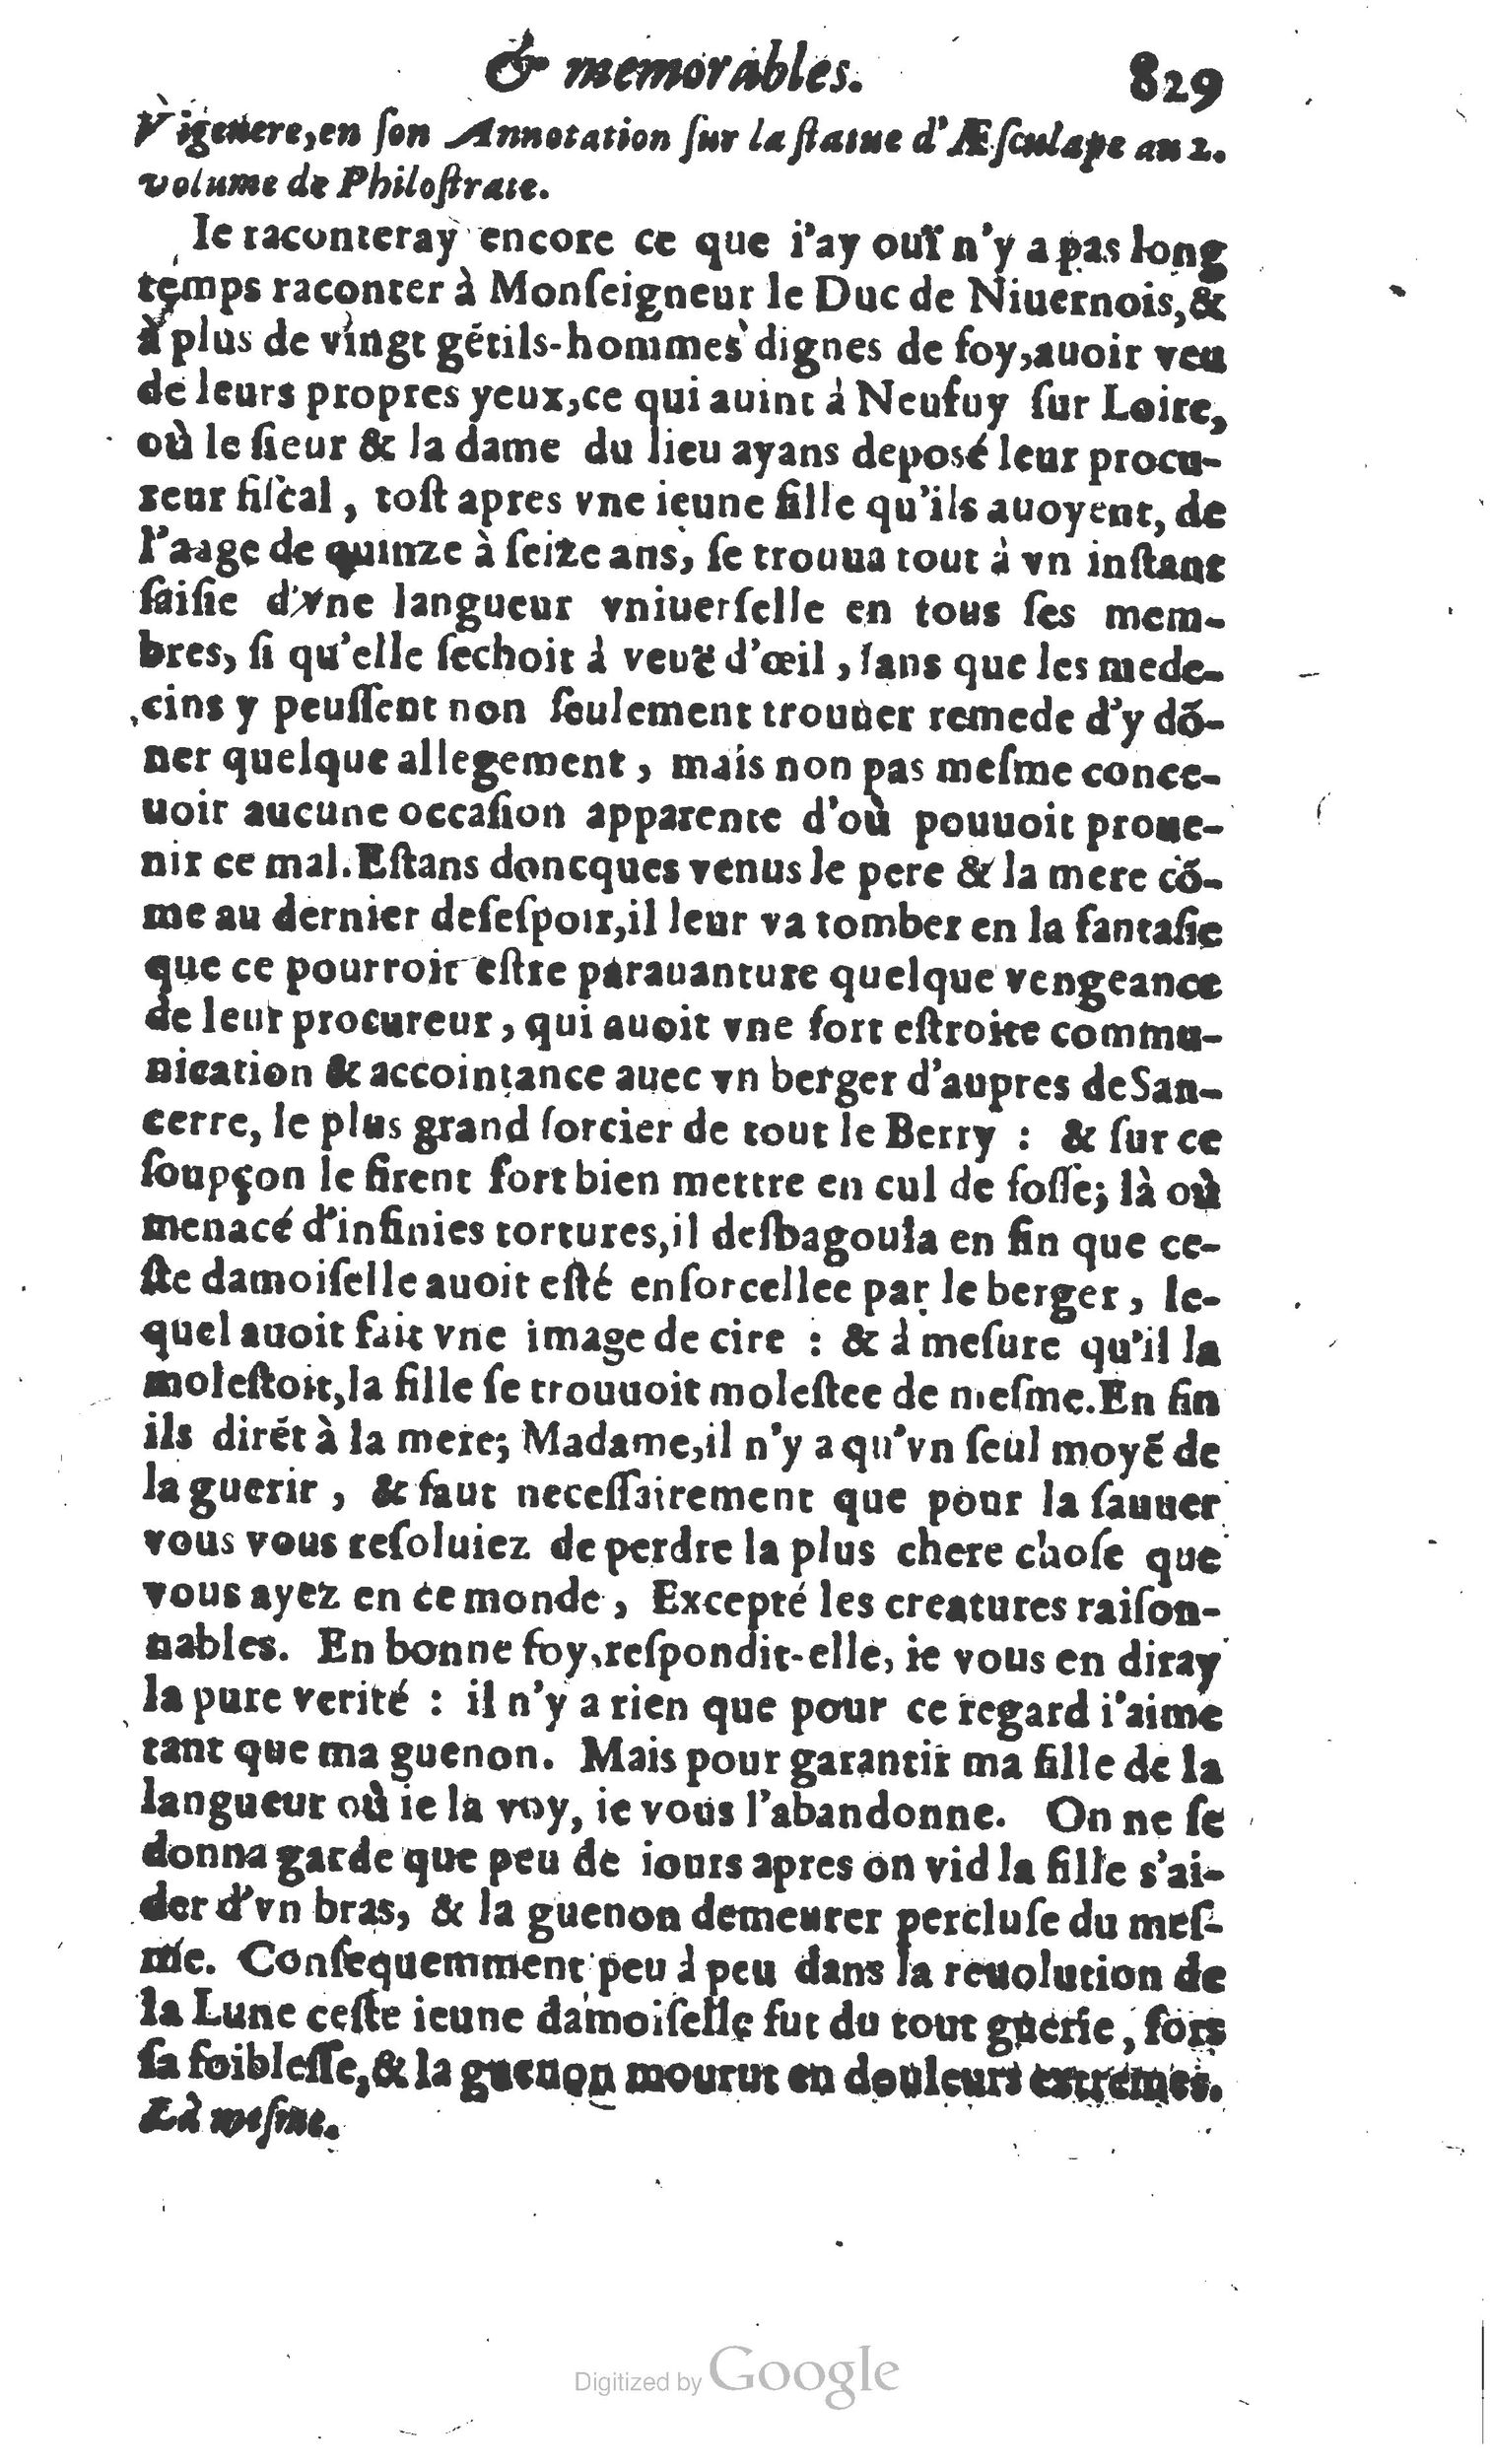 1610 Trésor d’histoires admirables et mémorables de nostre temps Marceau Princeton_Page_0850.jpg